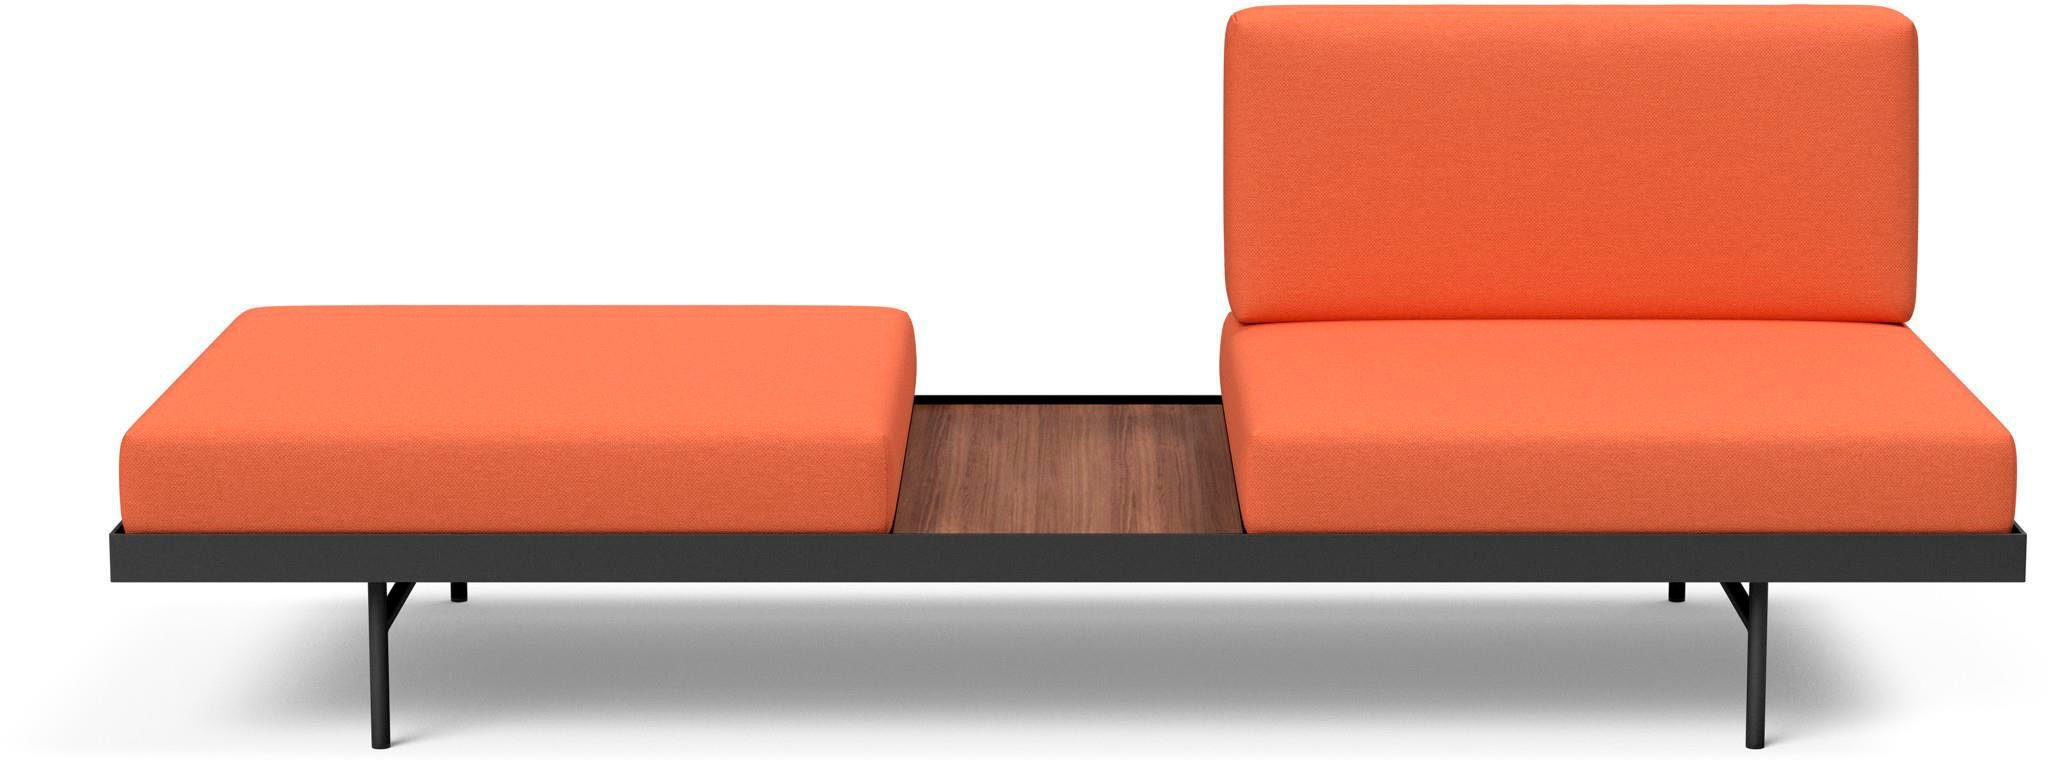 INNOVATION LIVING ™ Relaxliege PURI, Daybed mit integrierter Holzablage, flexible Aufteilung | Alle Sofas